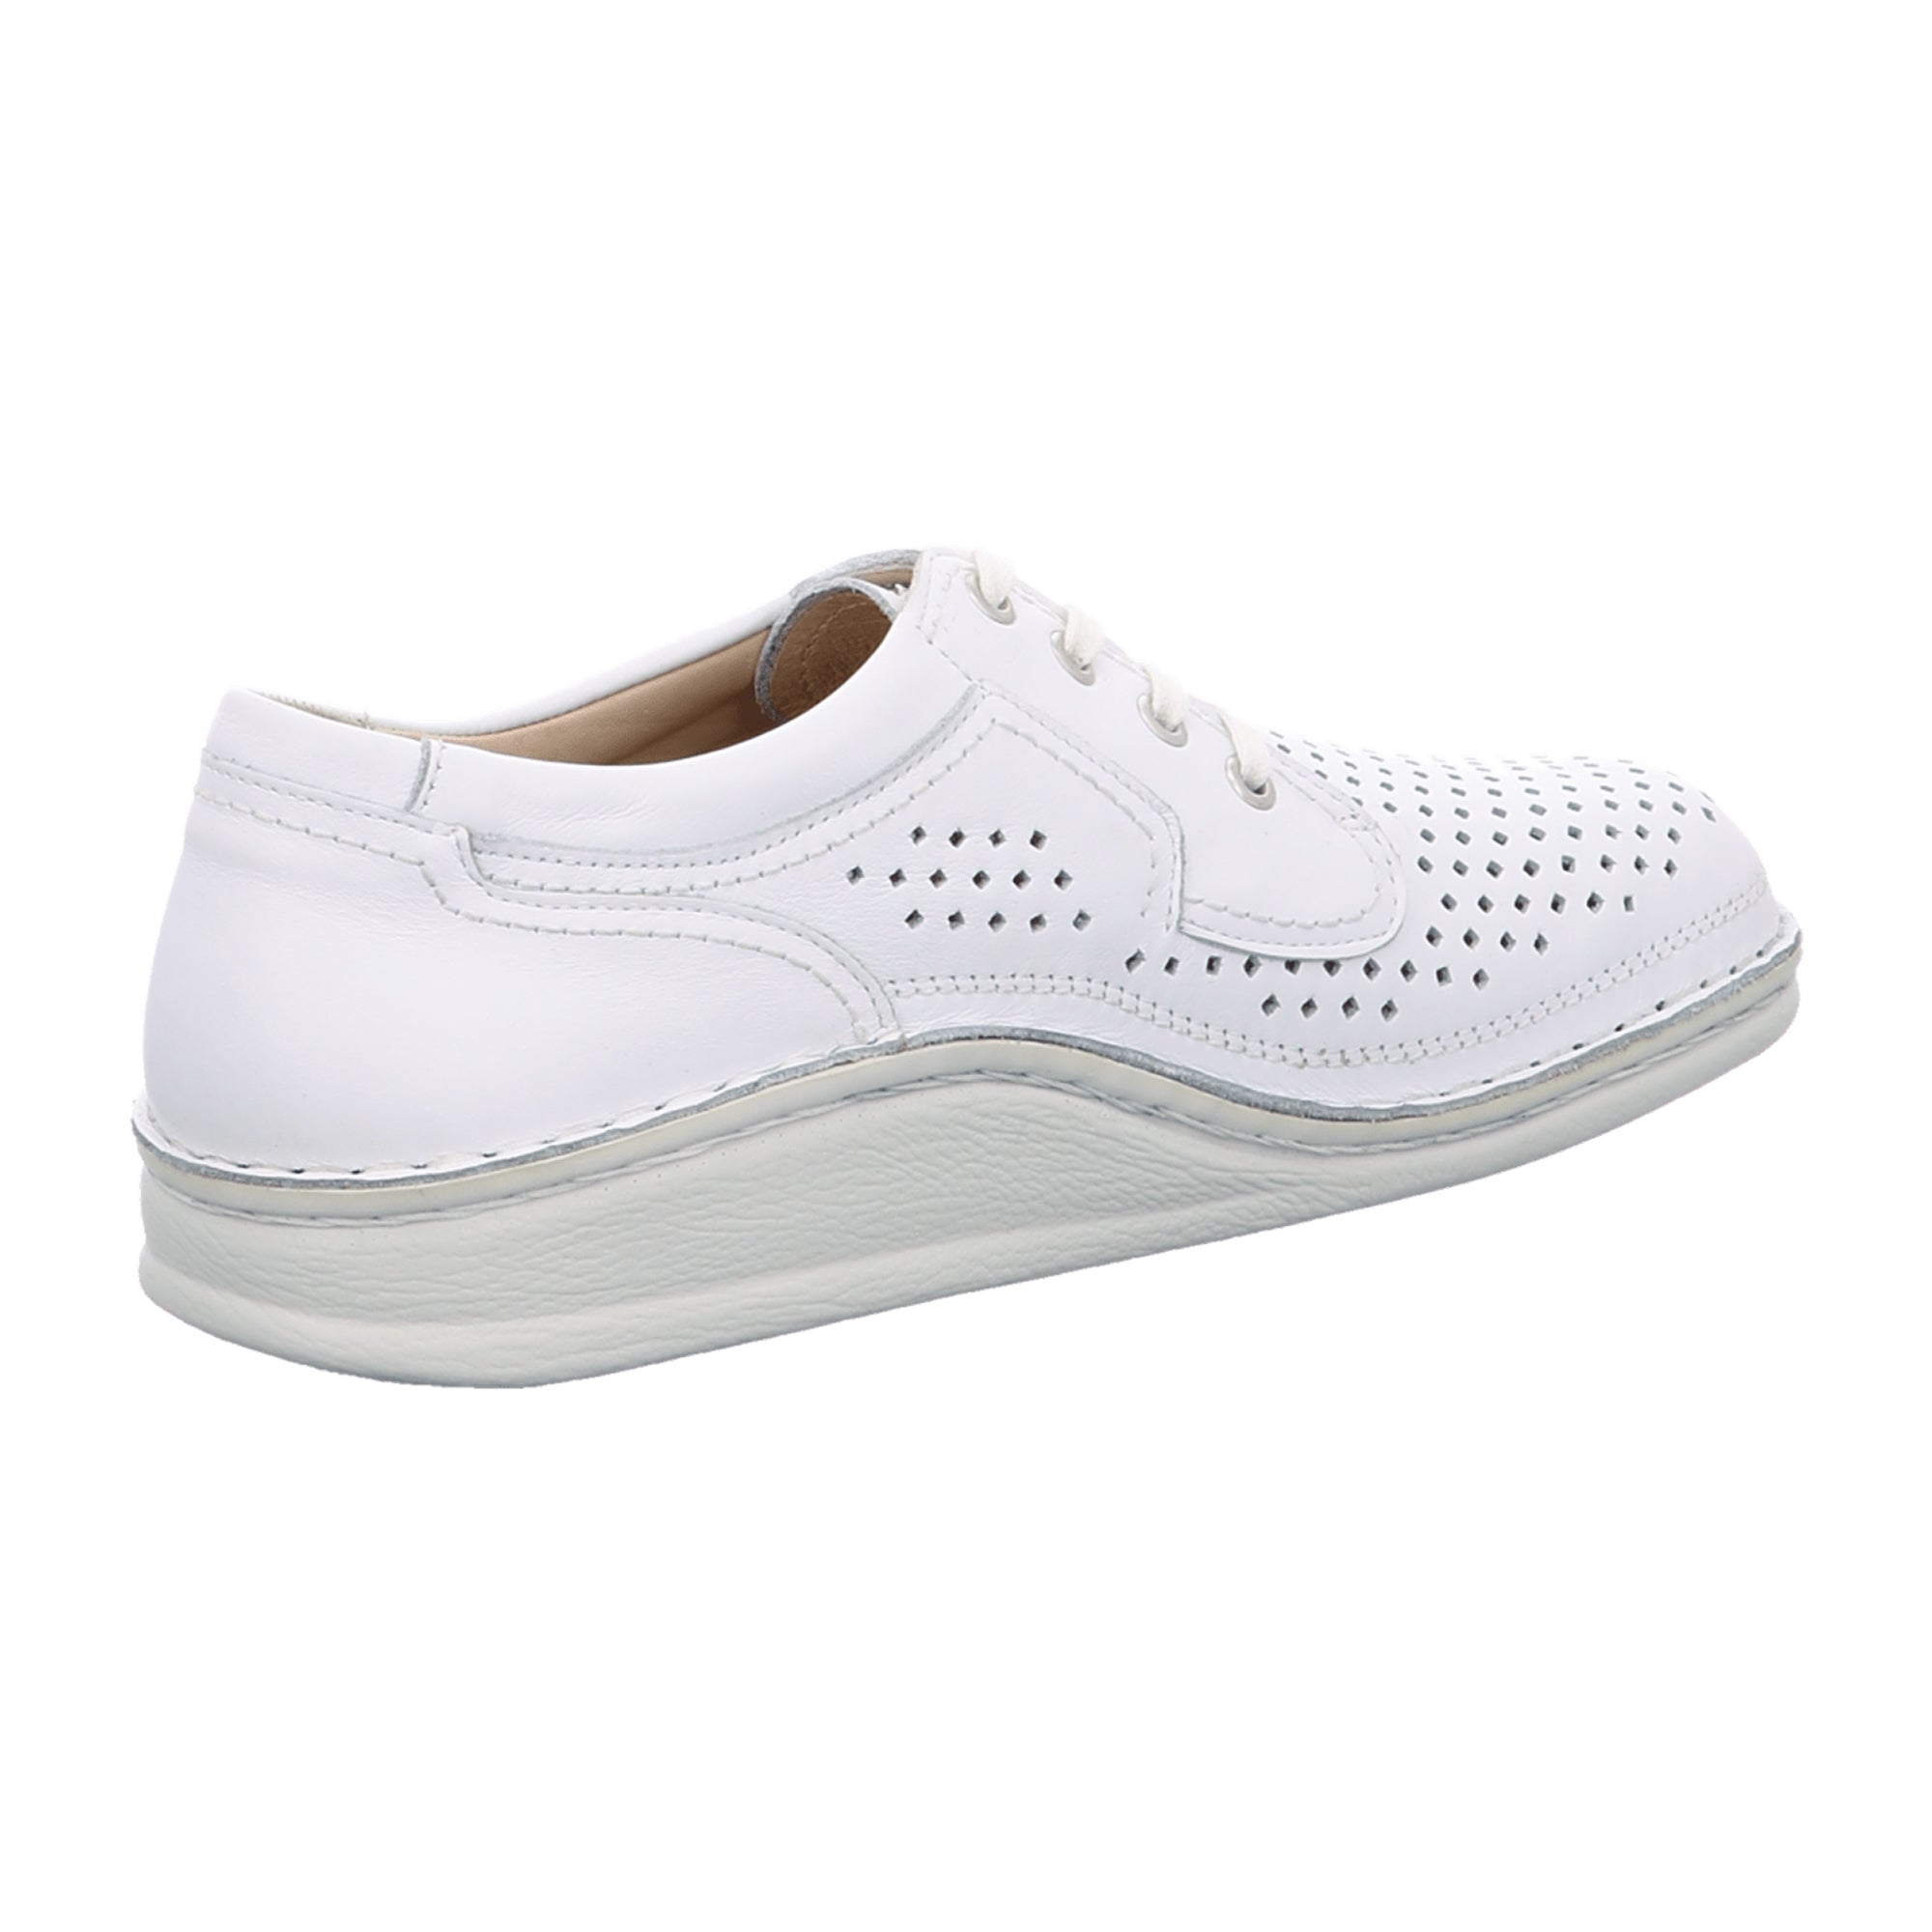 Finn Comfort Baden Men’s Comfort Shoes, White – Stylish & Durable